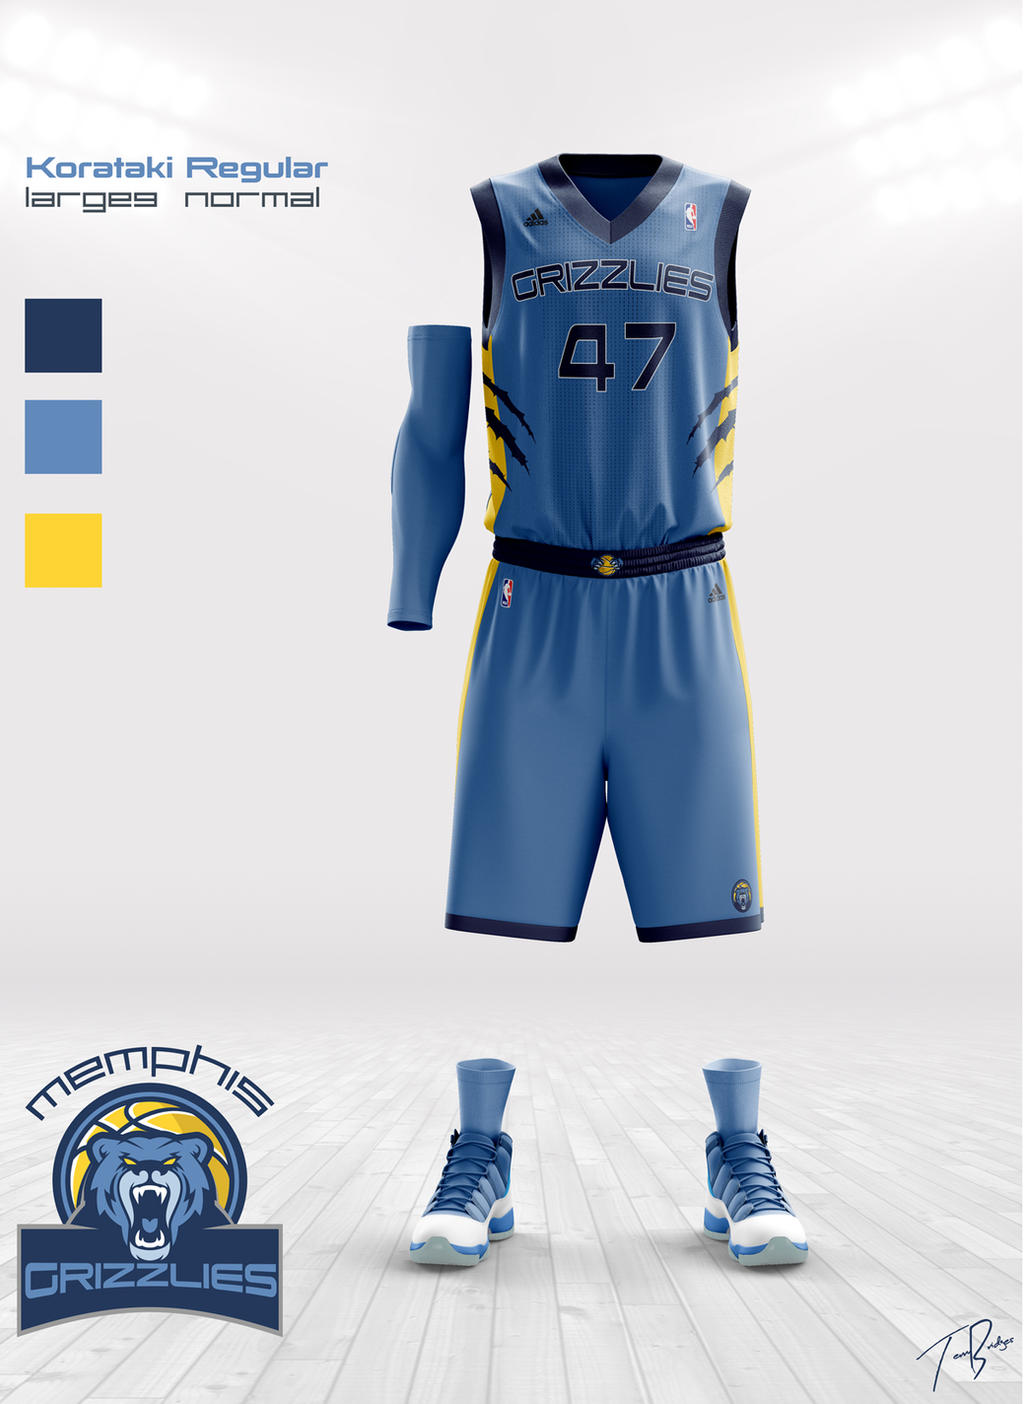 Memphis Grizzlies Jersey Concepts. (Via Djossuppah Art) on twitter